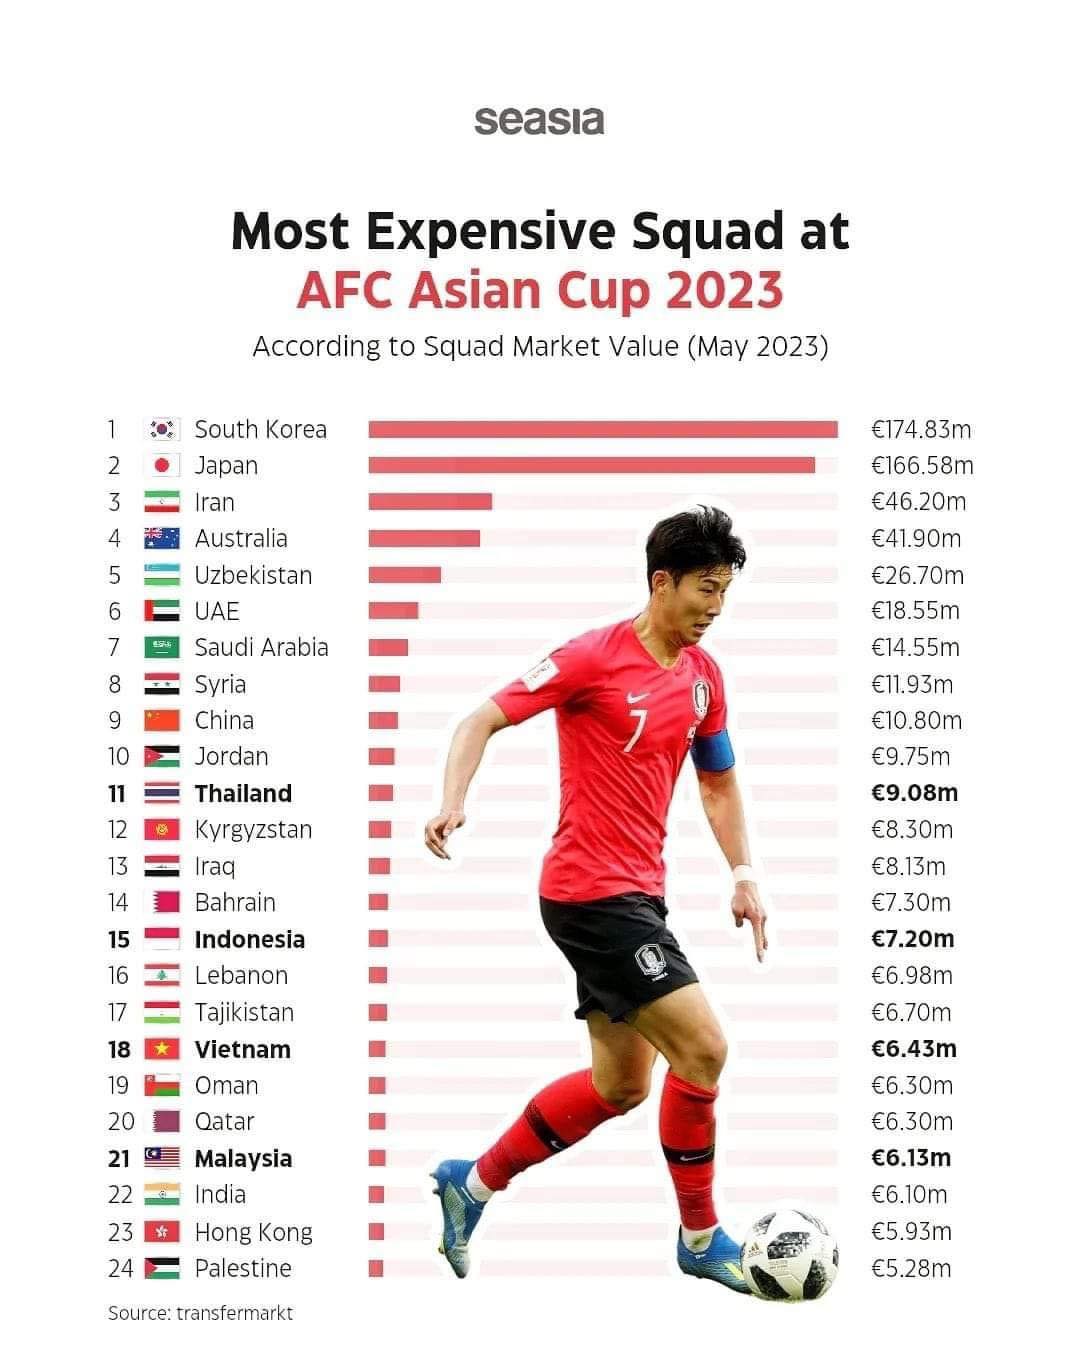 ĐT Việt Nam sở hữu đội hình đắt thứ 18 tại Asian Cup 2023, kém xa Thái Lan - Ảnh 1.